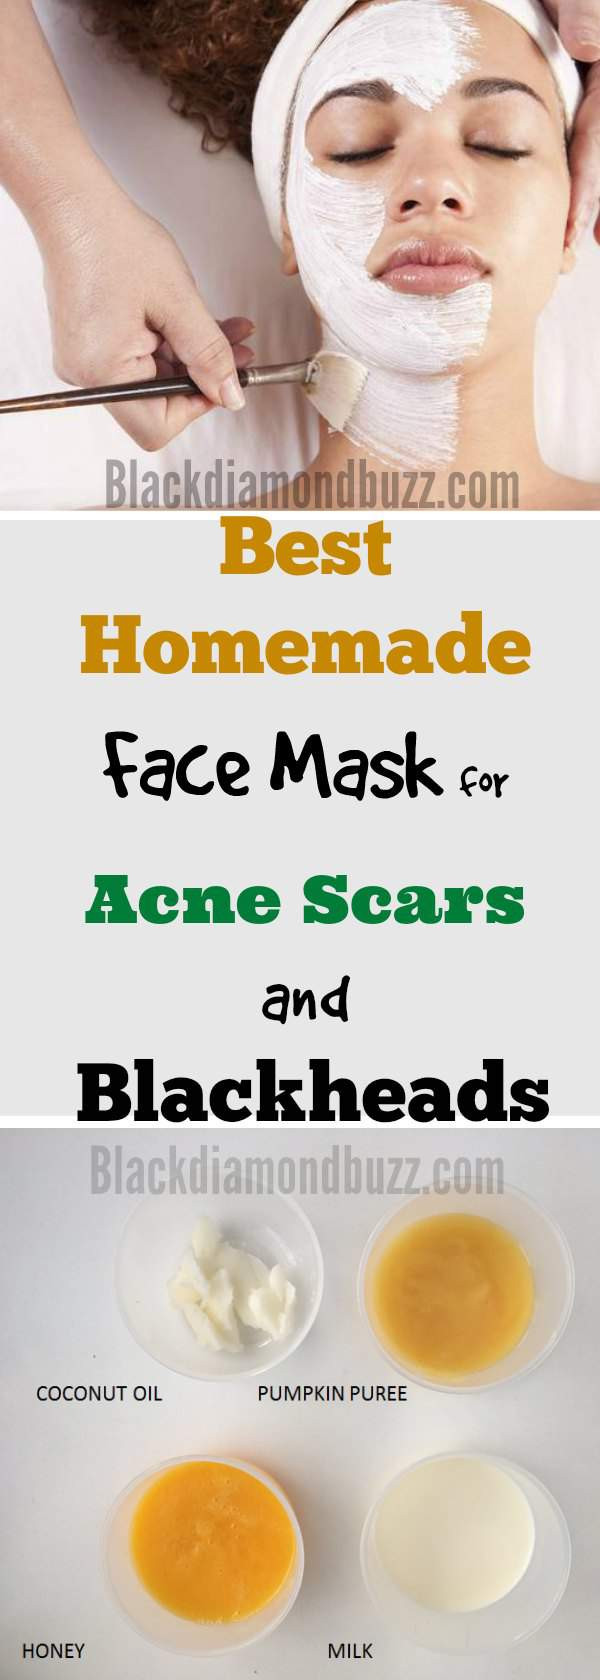 DIY Face Masks Acne
 DIY Face Mask for Acne 7 Best Homemade Face Masks